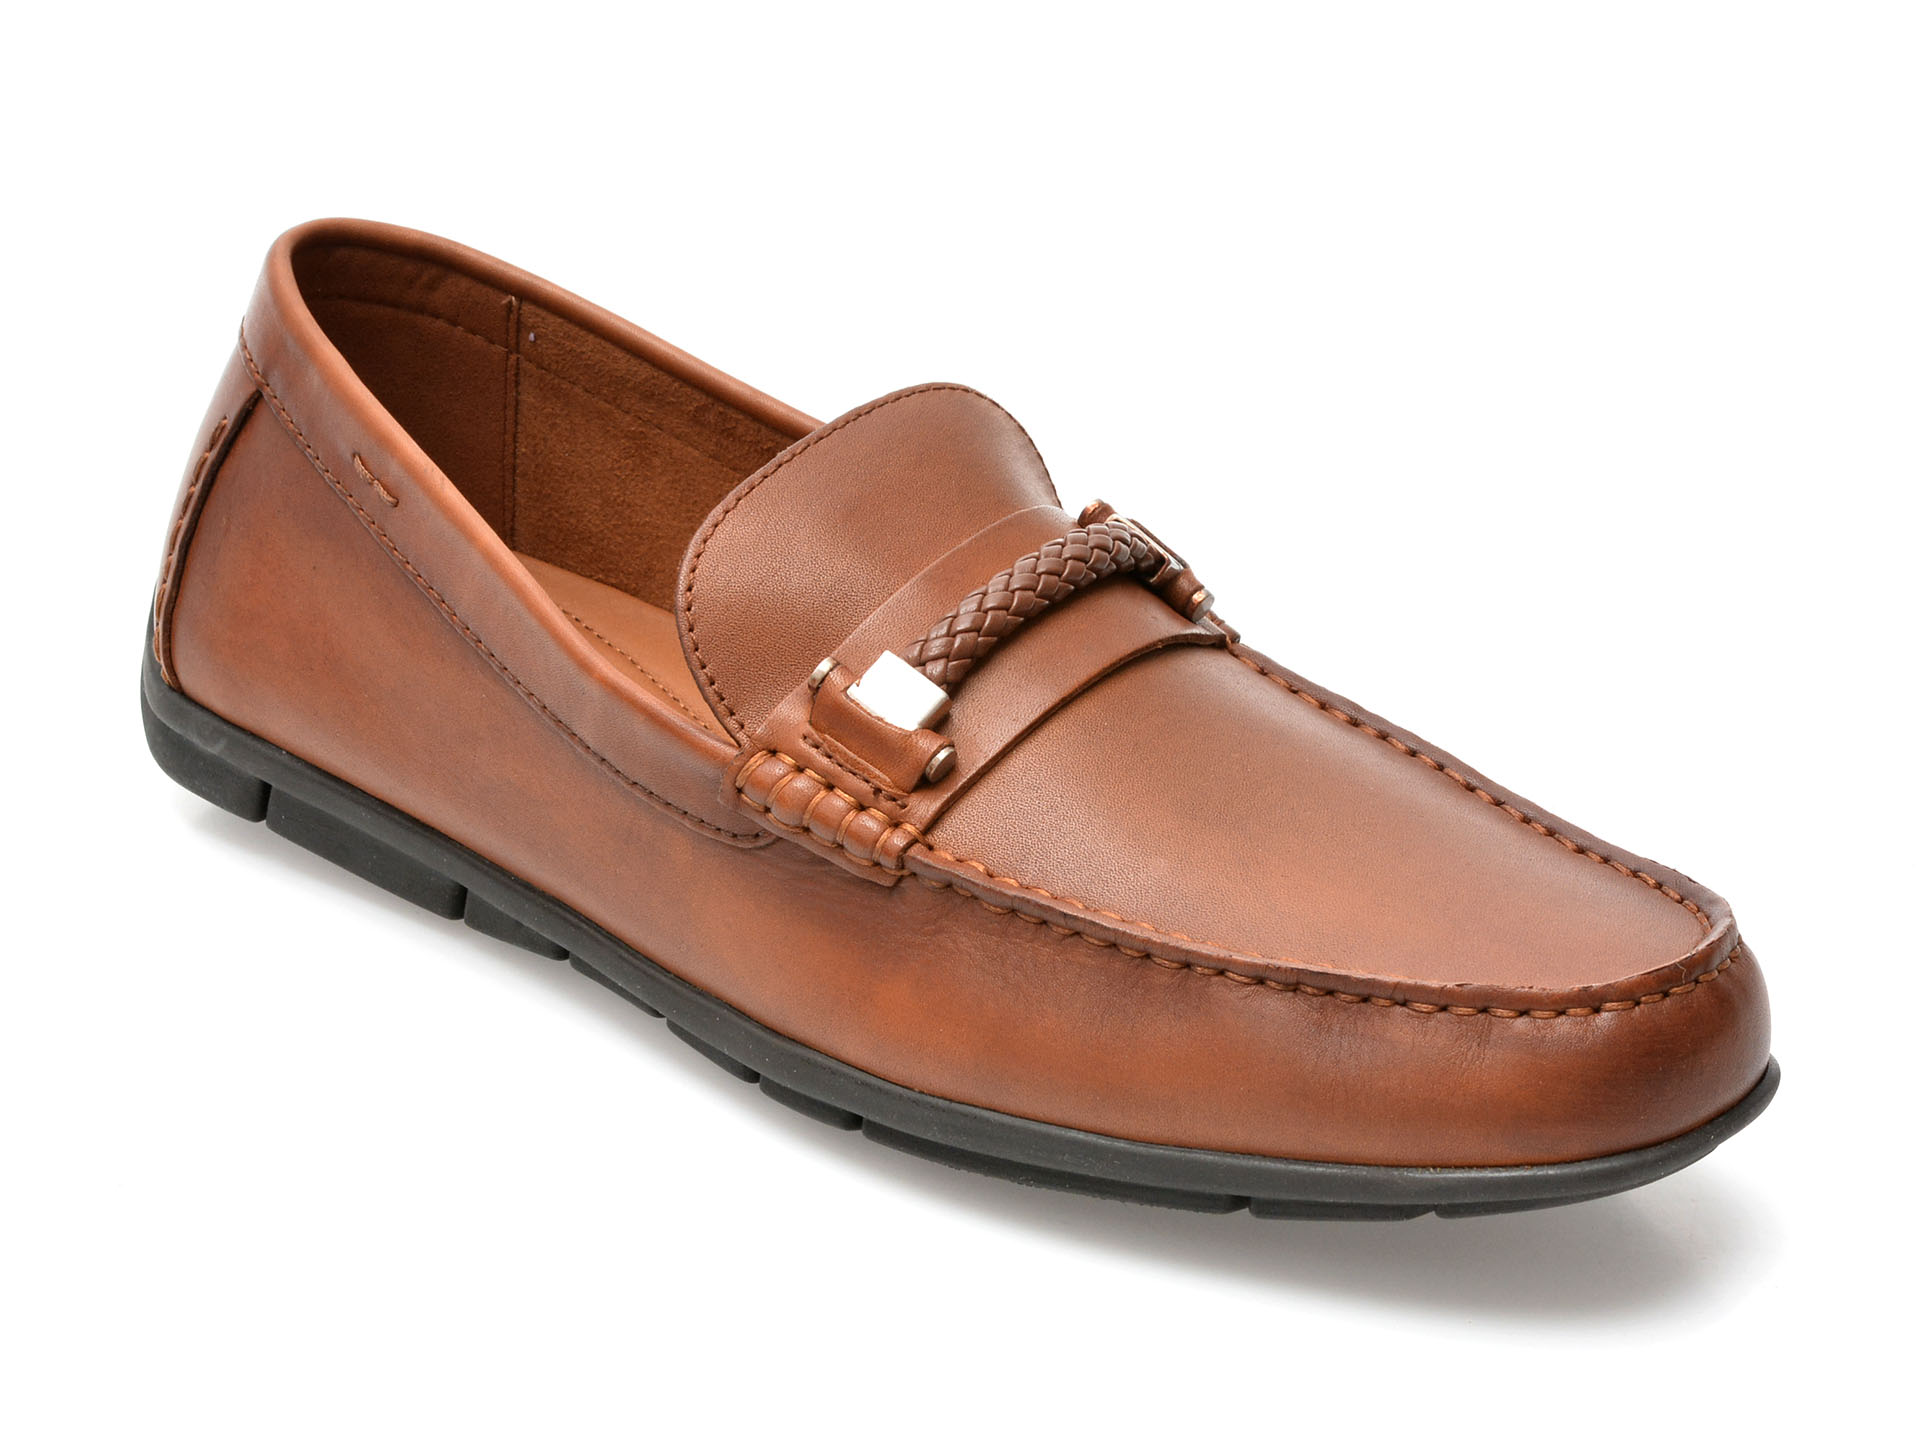 Pantofi ALDO maro, ZIRNUFLEX220, din piele naturala /barbati/pantofi